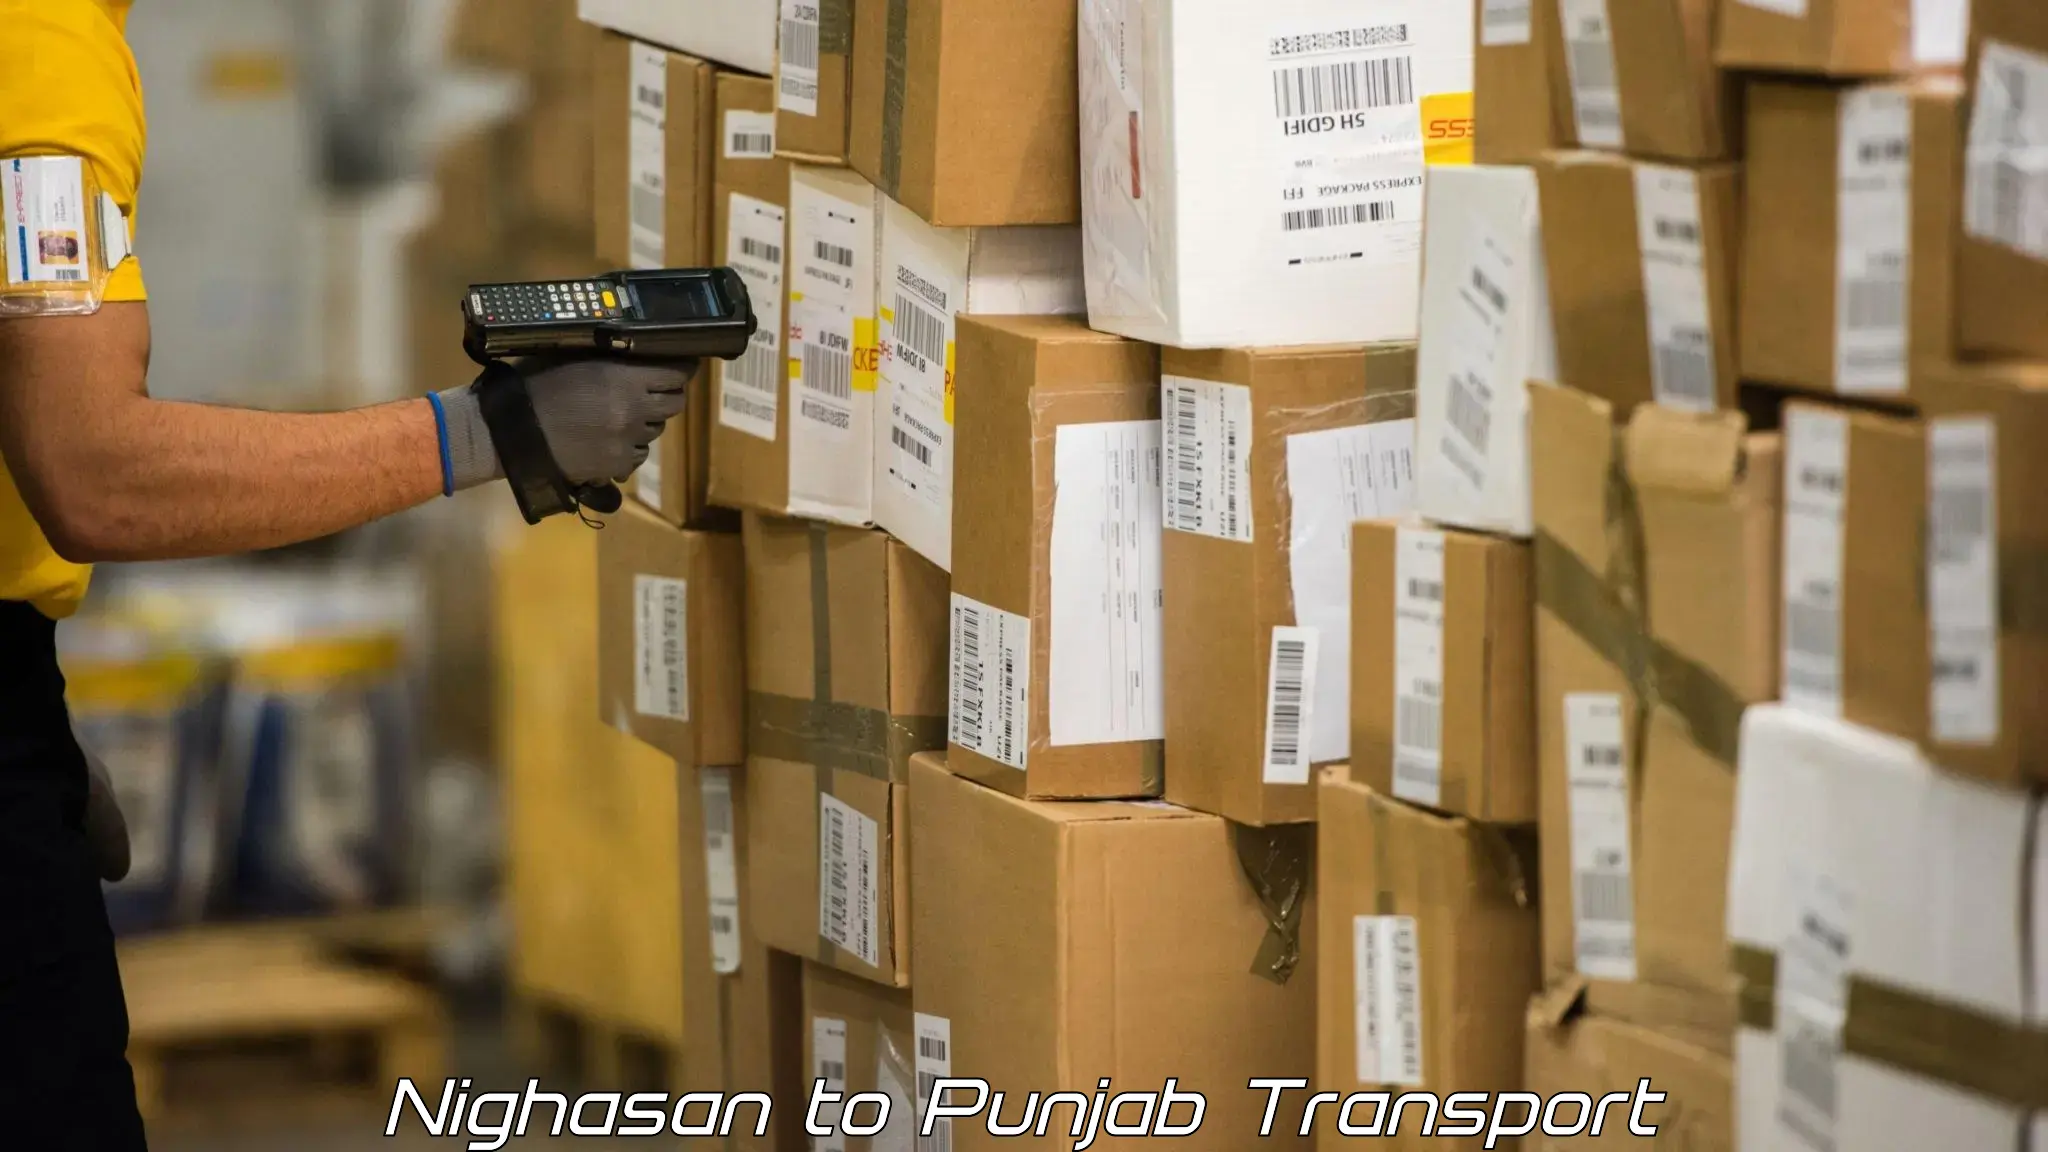 Vehicle transport services Nighasan to Punjab